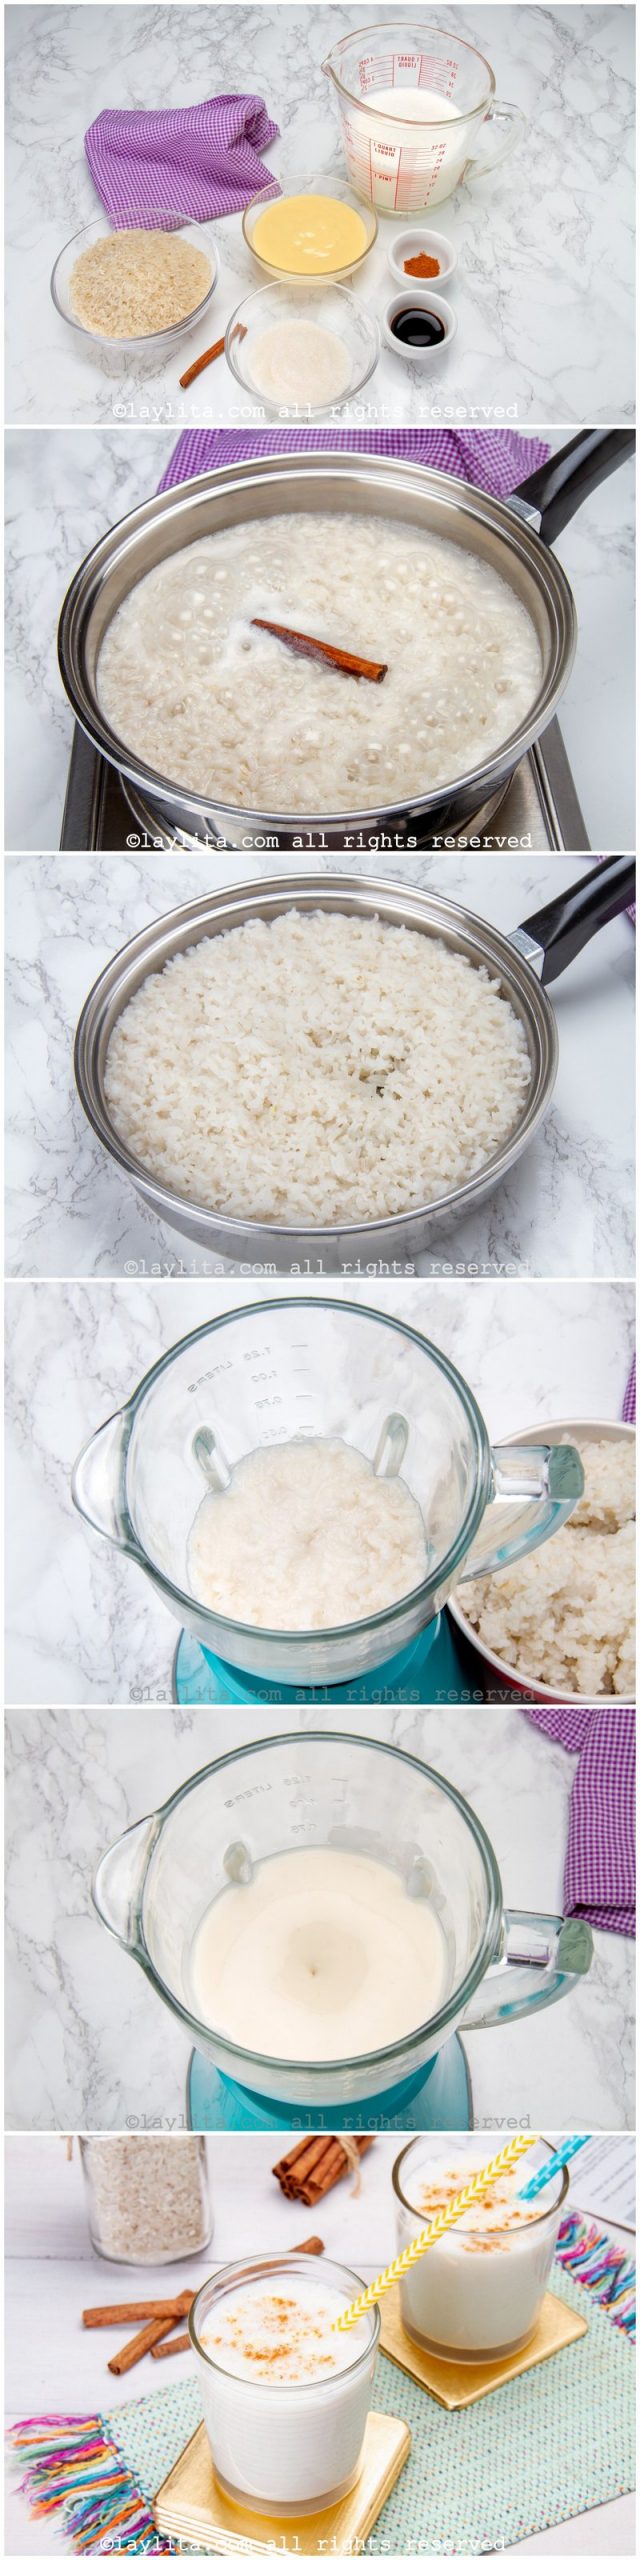 Fotos paso a paso para preparar la chicha de arroz venezolana